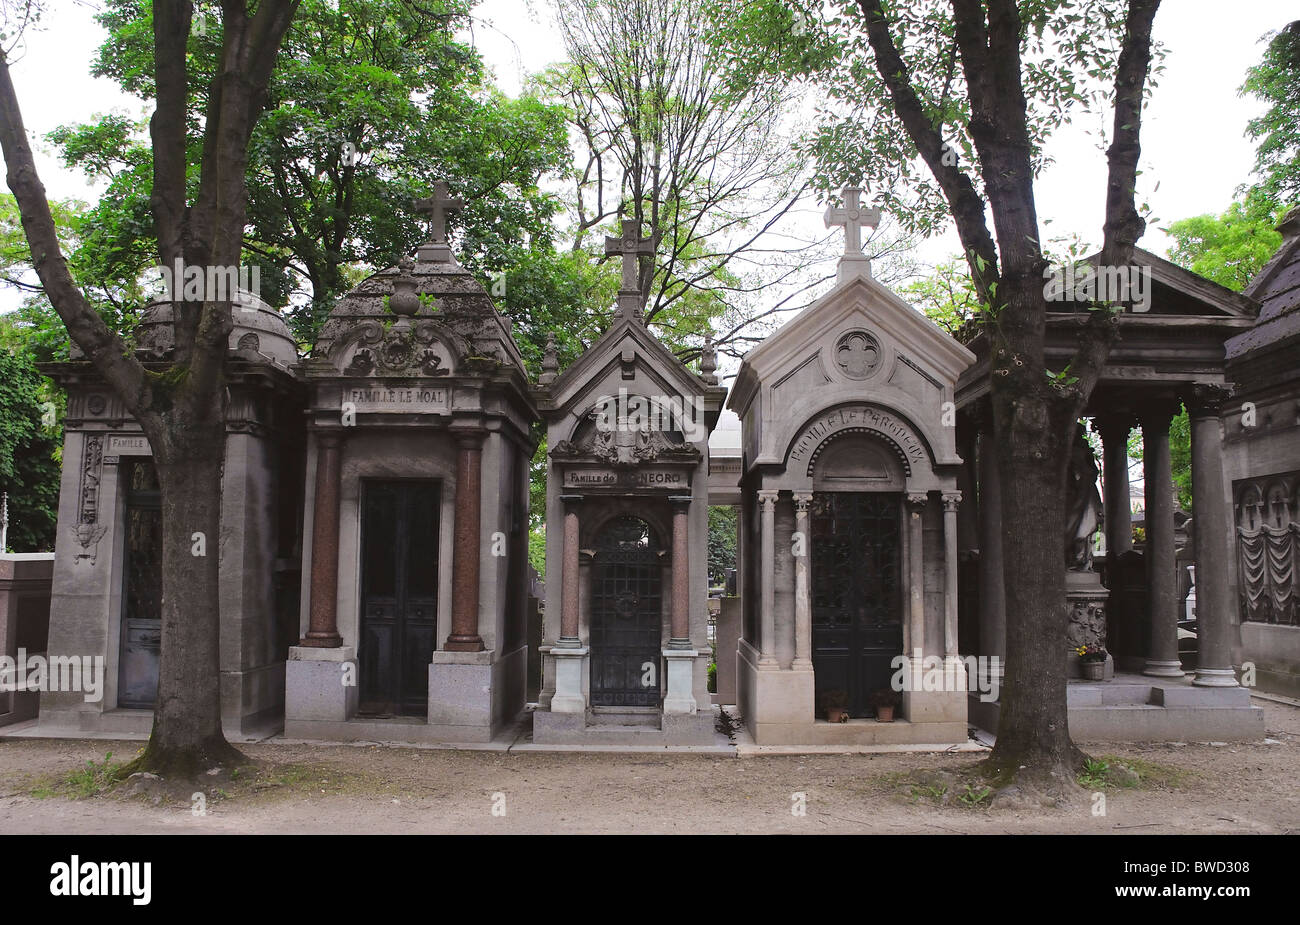 Tombs within Montmartre Cemetery, Cimetiere de Montmartre, Paris, France Stock Photo